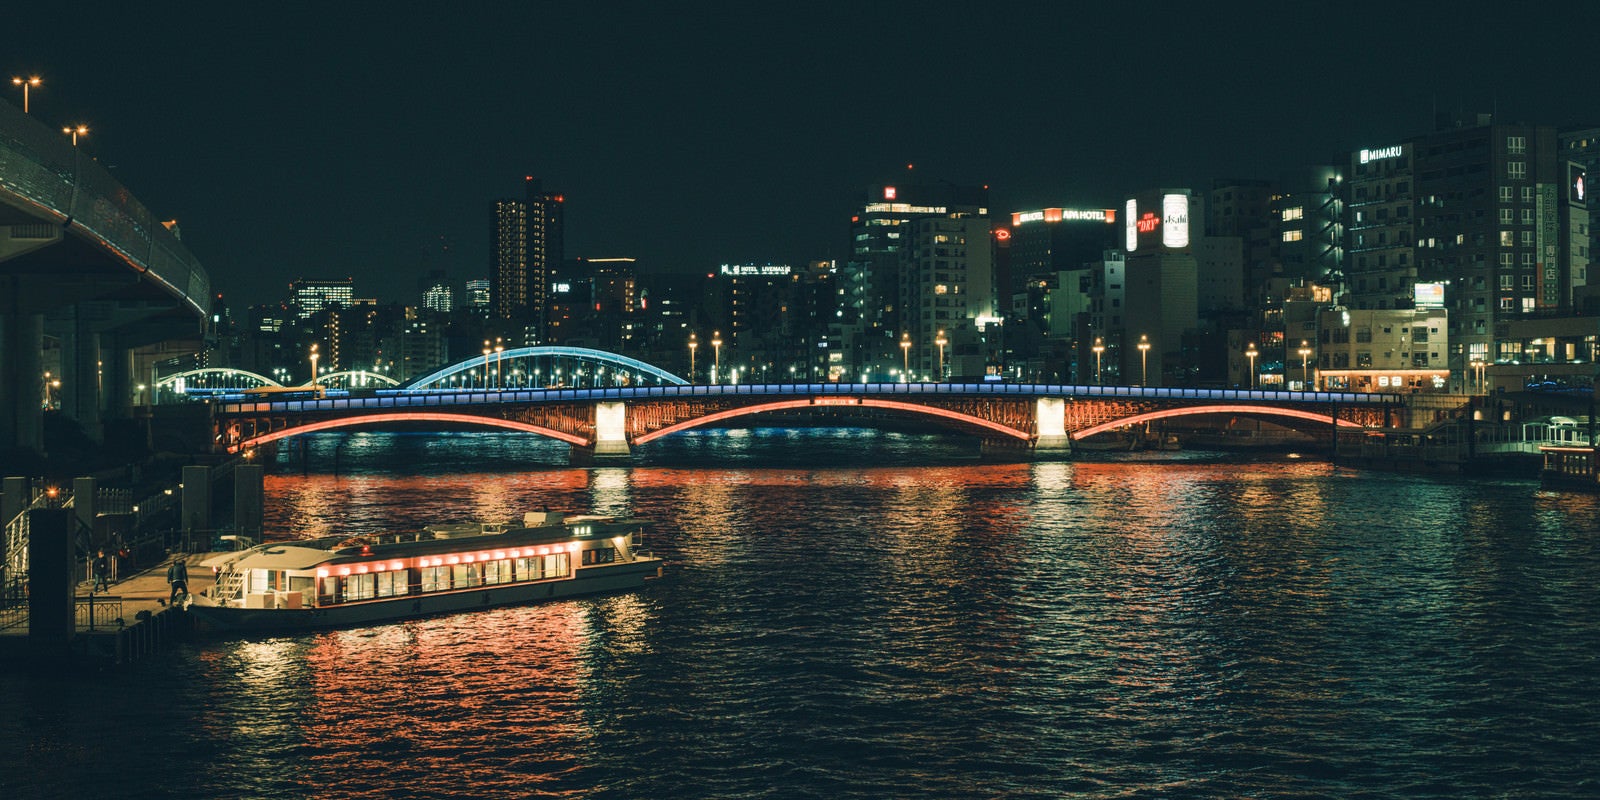 「ライトアップされた橋と水上バス（隅田川）」の写真